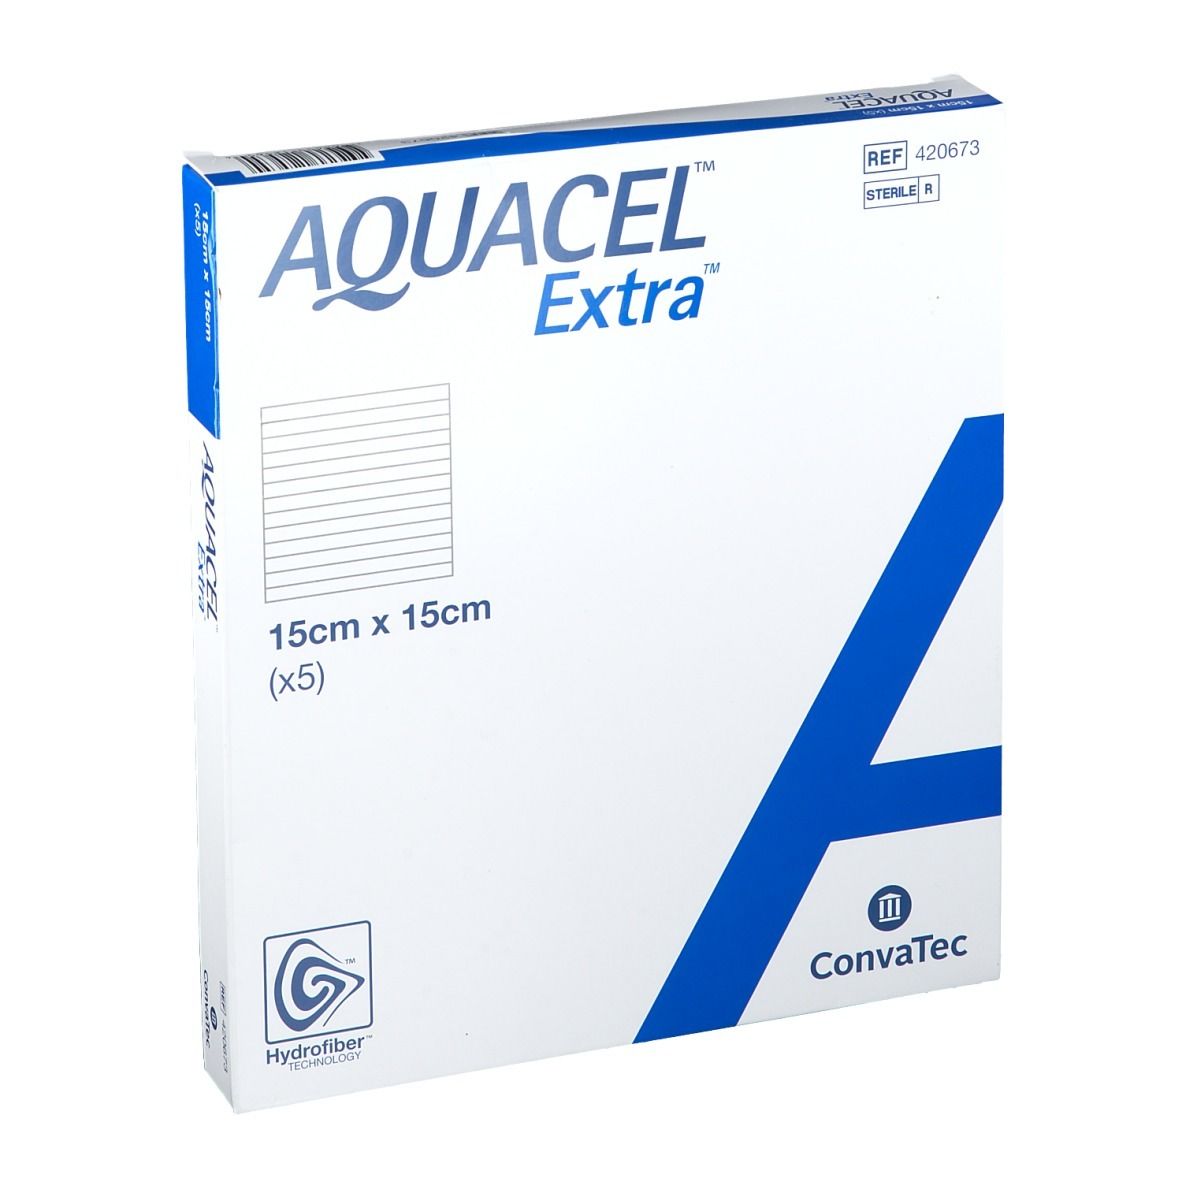 ConvaTec AQUACEL® Extra™ 15 x 15 cm